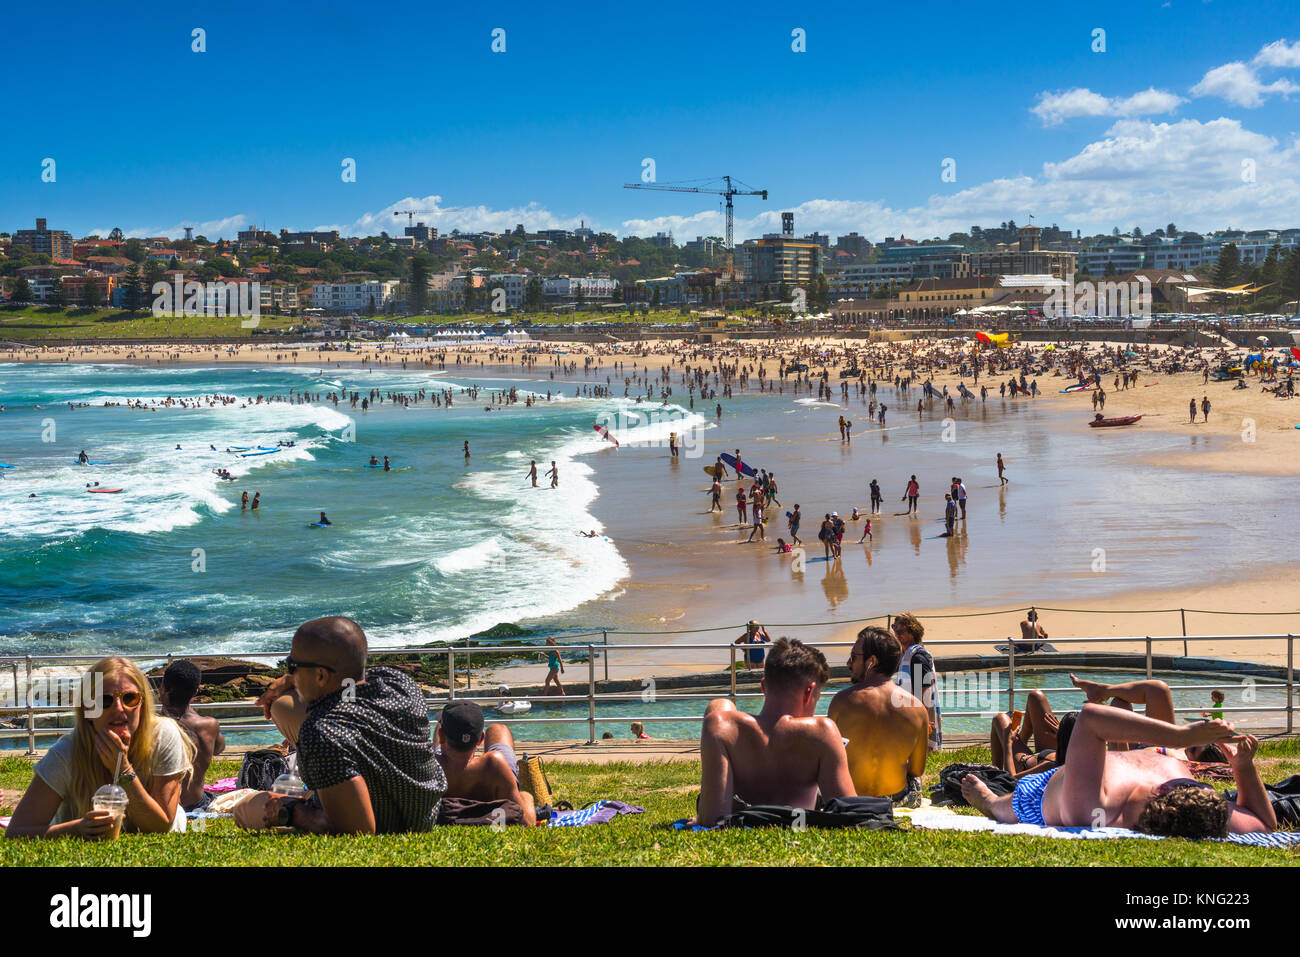 Un affollato Bondi Beach in un giorno d'estate. Sydney, NSW. Australia Foto Stock